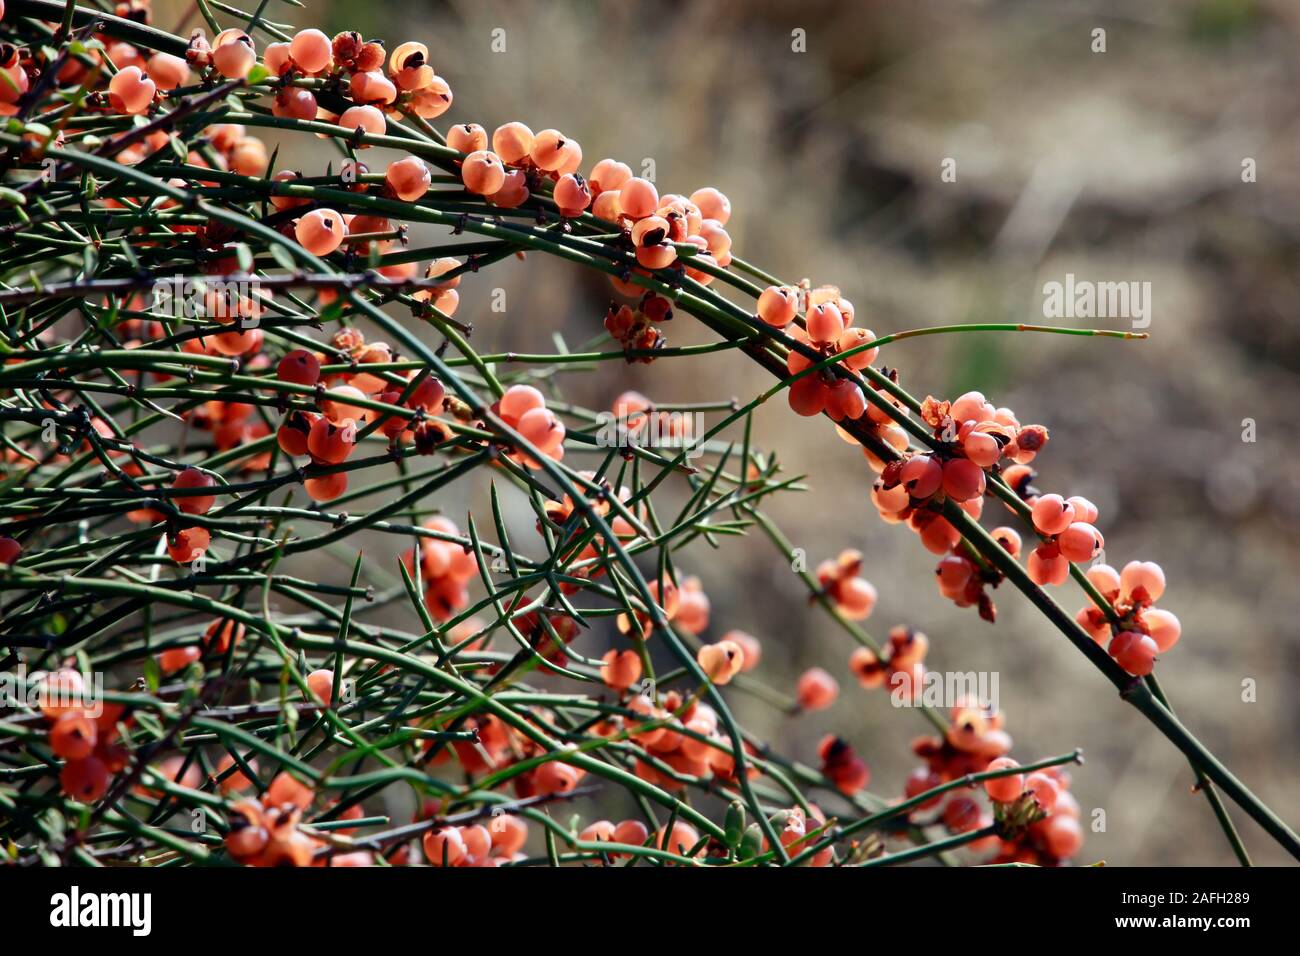 Meerträubel (Ephedra foeminea) mit roten, reifen Früchten, Bafra, Türkische Republik Nordzypern Stock Photo